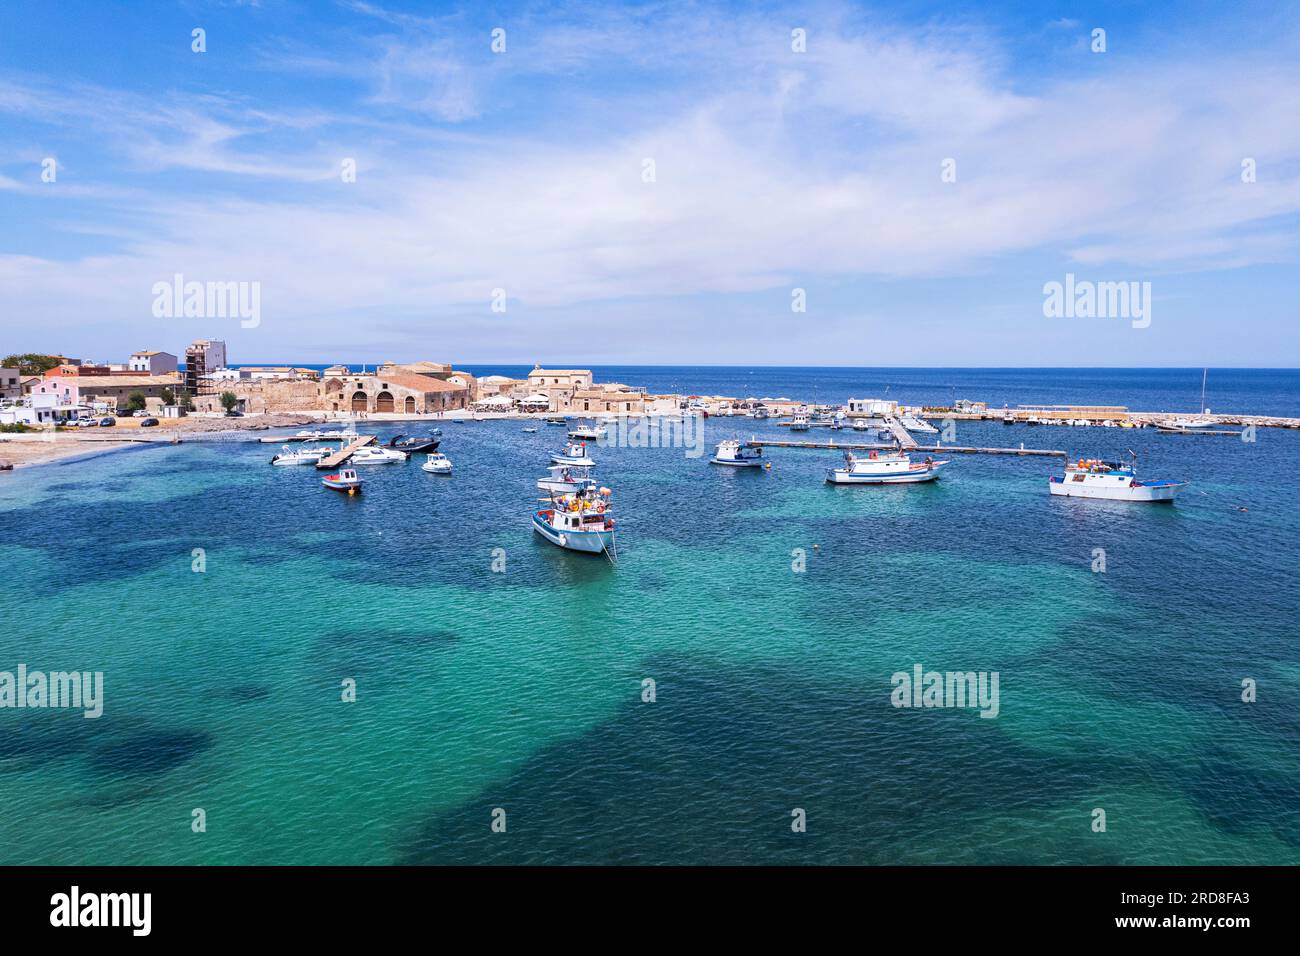 Vista aerea del porto del villaggio di pescatori di Marzamemi con barche da pesca galleggianti nelle acque turchesi, Marzamemi Foto Stock